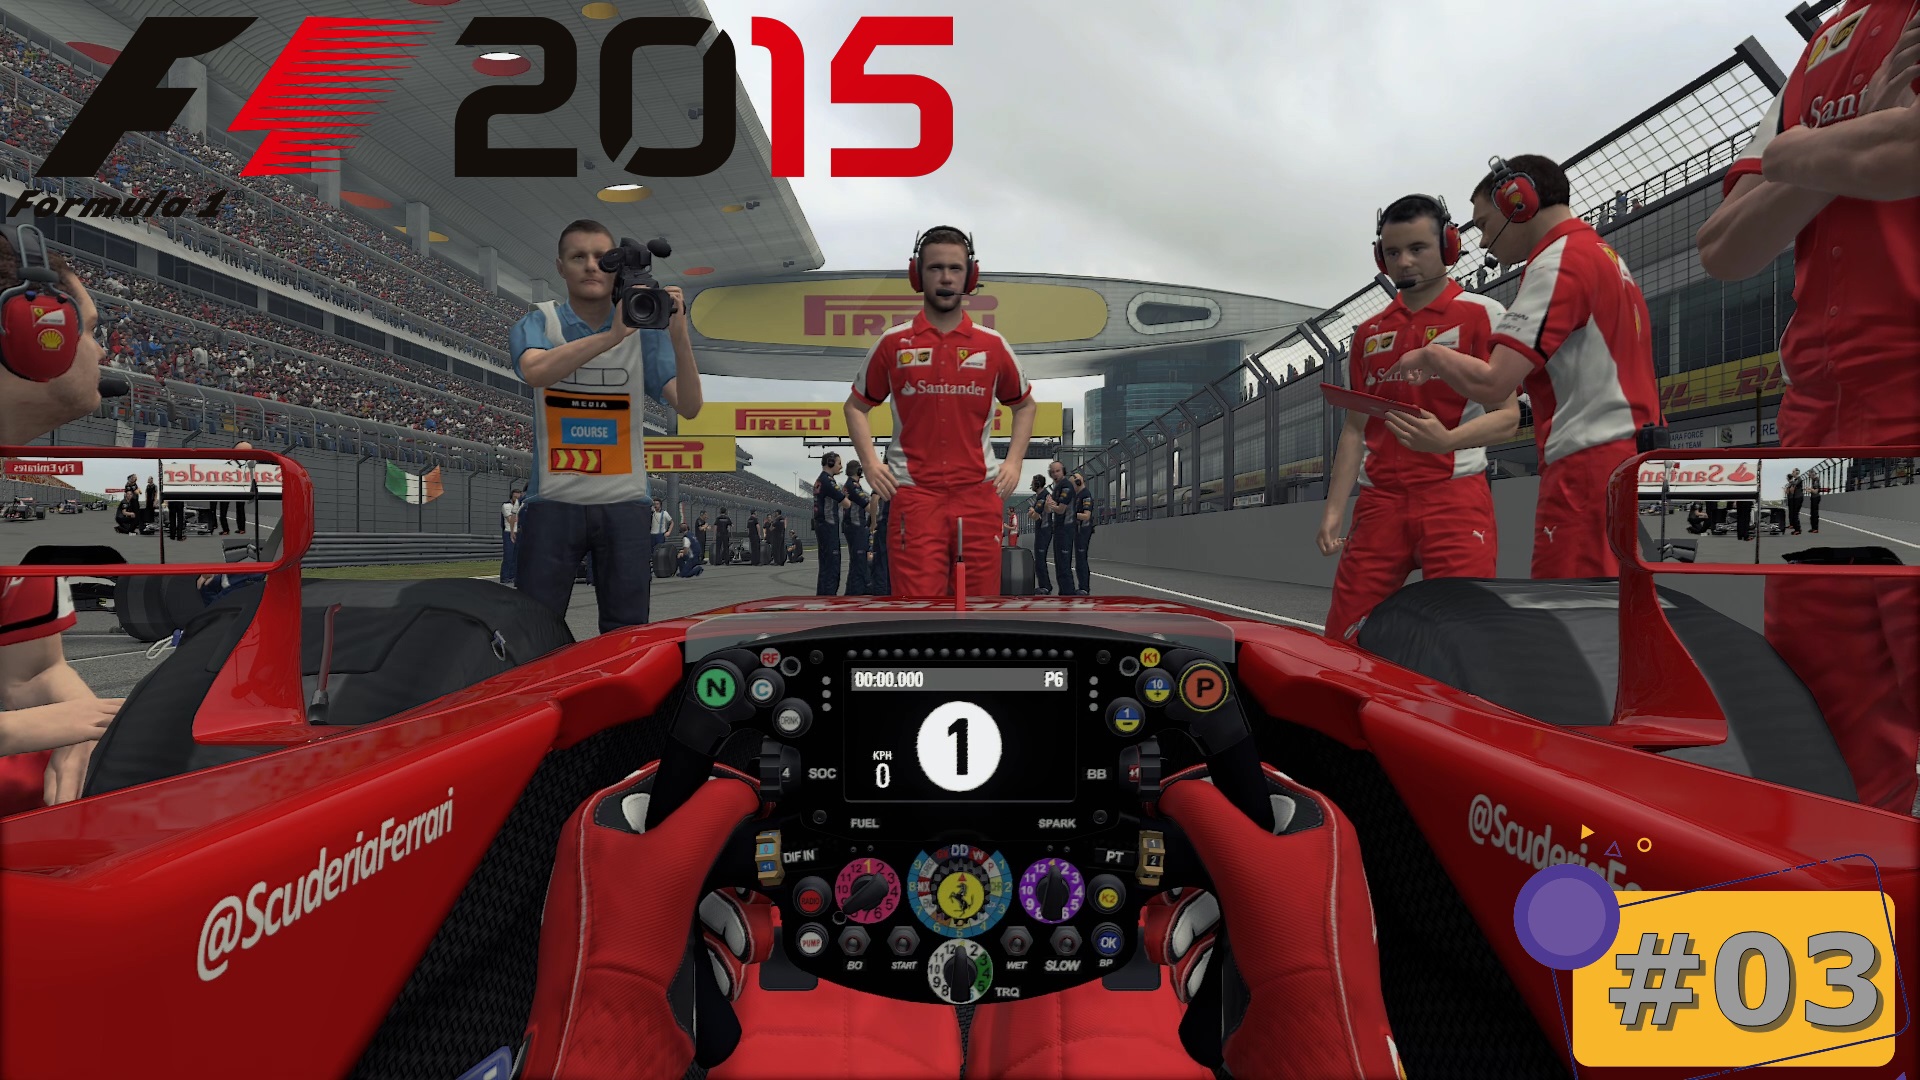 Scuderia Ferrari - #03 Shanghai Circuit | F1 2015 - Режим Чемпионата | Logitech G29